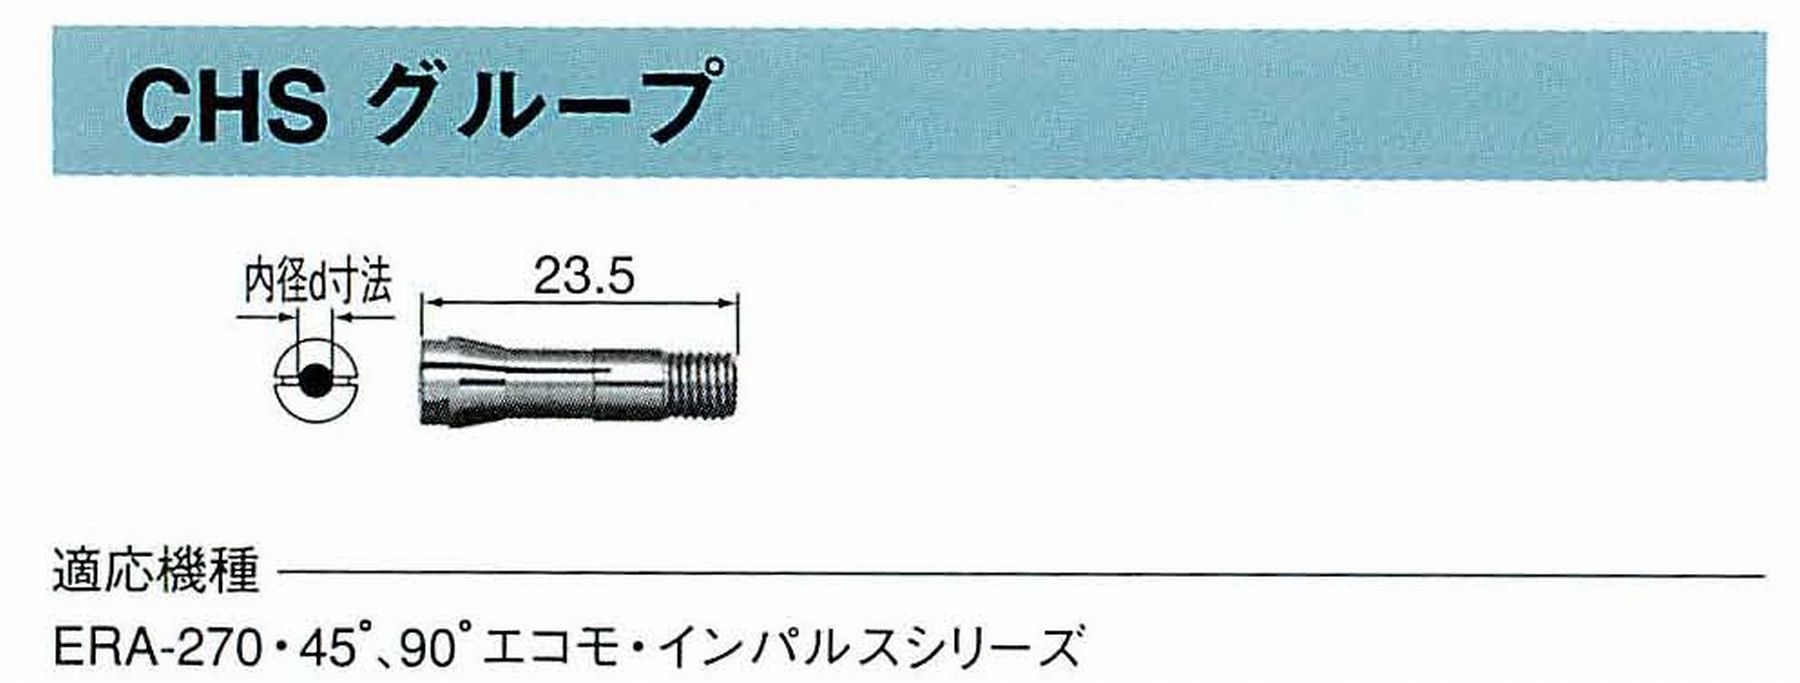 ナカニシ/NAKANISHI コレットチャック コード番号 90526 型式 CHS-2.6 内径:Φ2.6